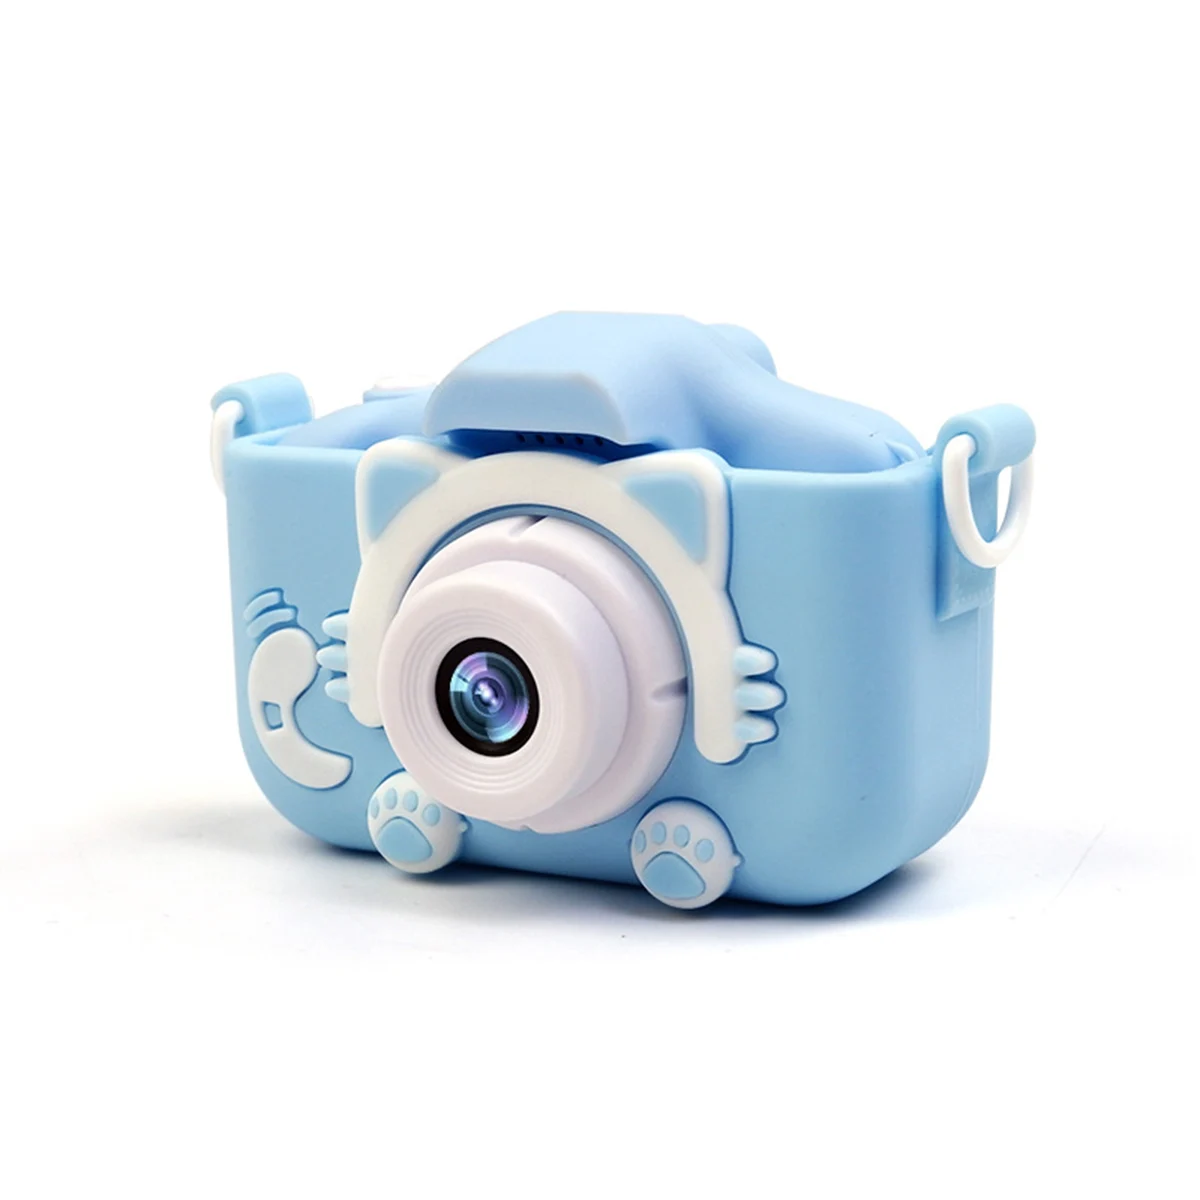 2000 Вт пикселей детская мини-камера детские развивающие игрушки для детей подарки на день рождения Подарочная цифровая камера проекционная видеокамера - Цвет: Синий